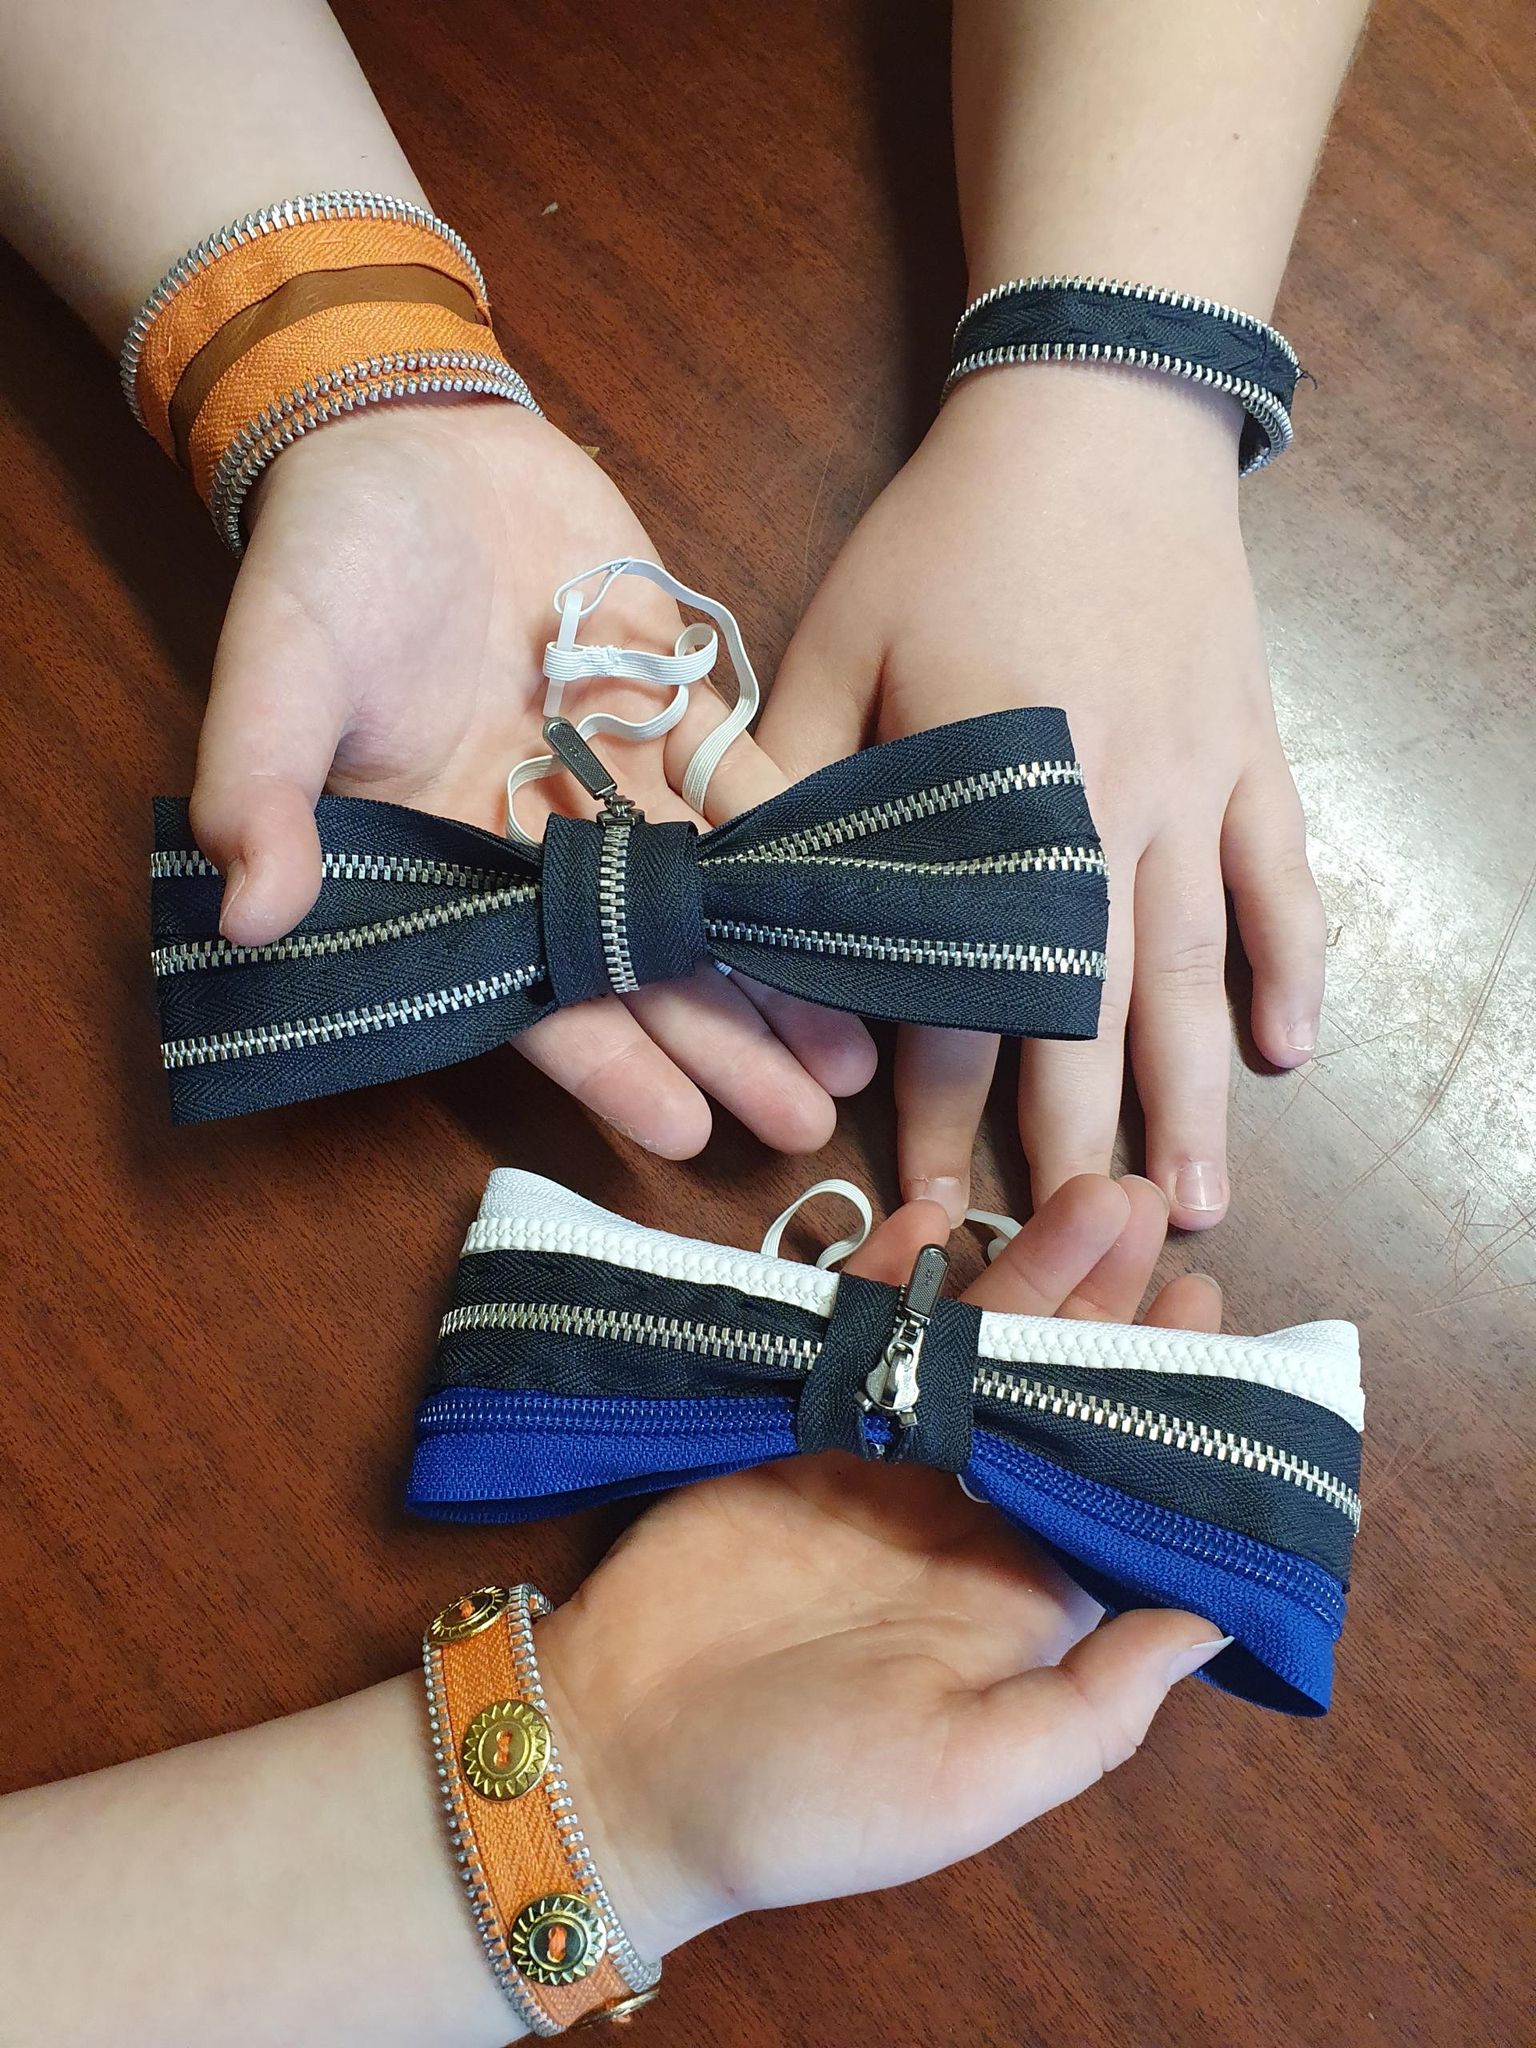 Jõõpre kooli meeskond Kuldsed Käed teenis lukkudest käevõrude ja lipsude valmistamise eest eriauhinna “Lootustandev bränditoode”.